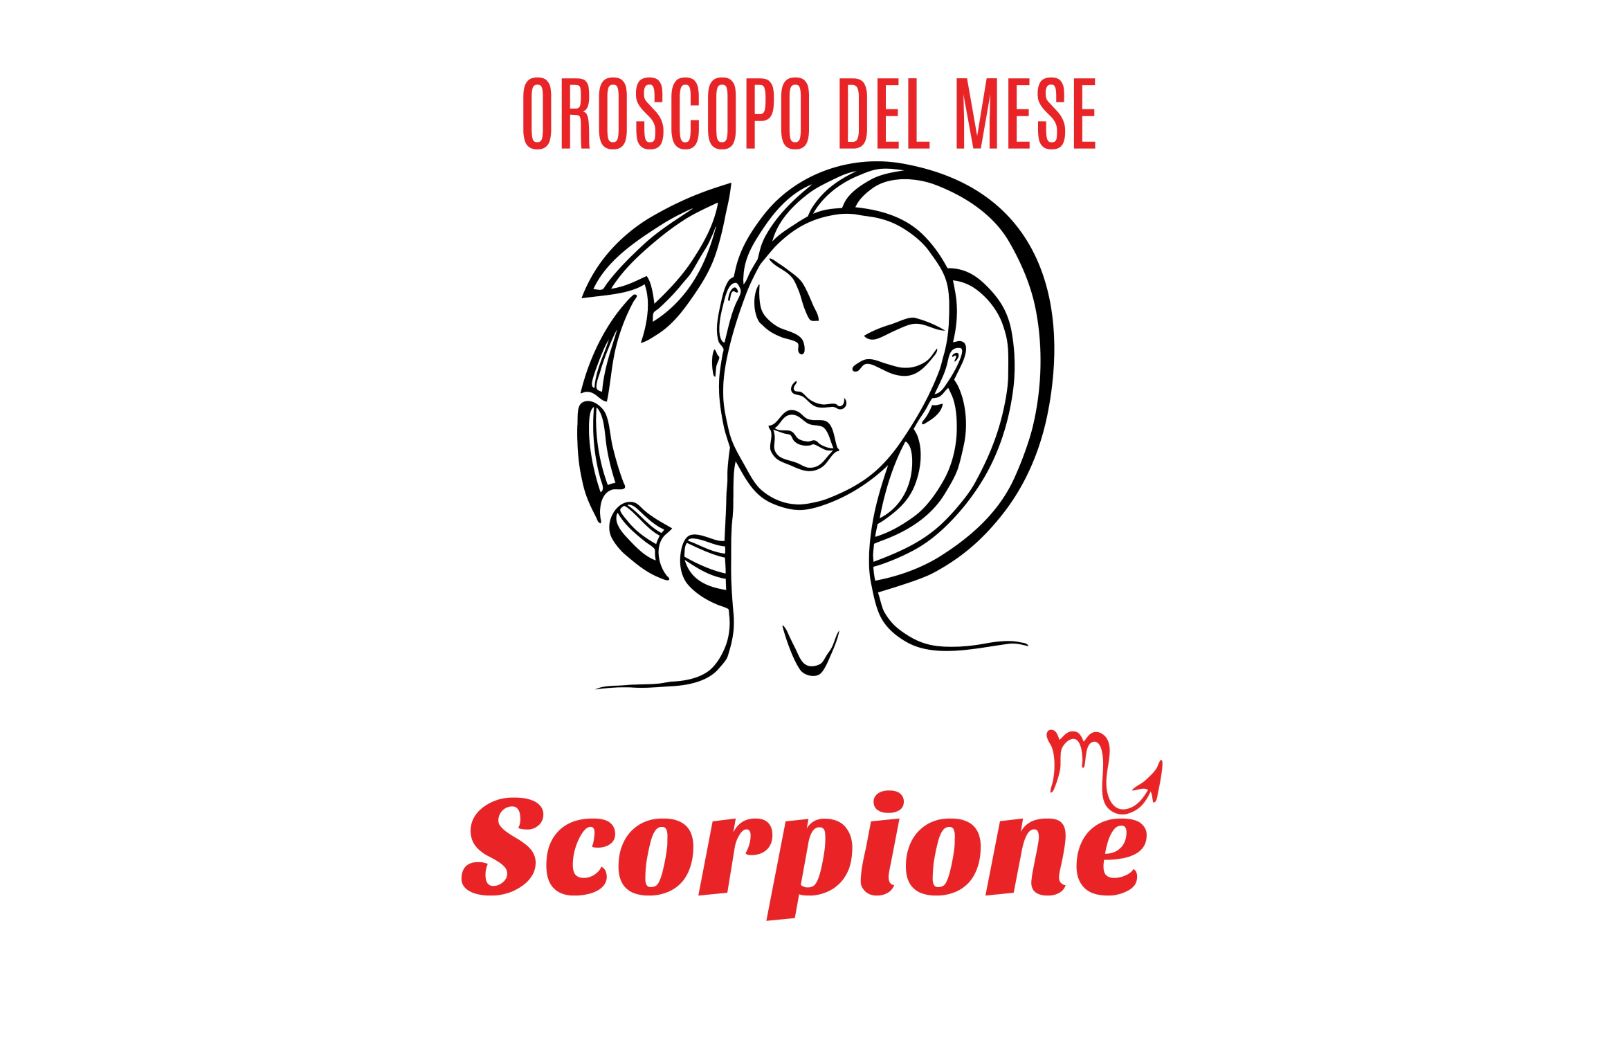 Oroscopo del mese: Scorpione - maggio 2020